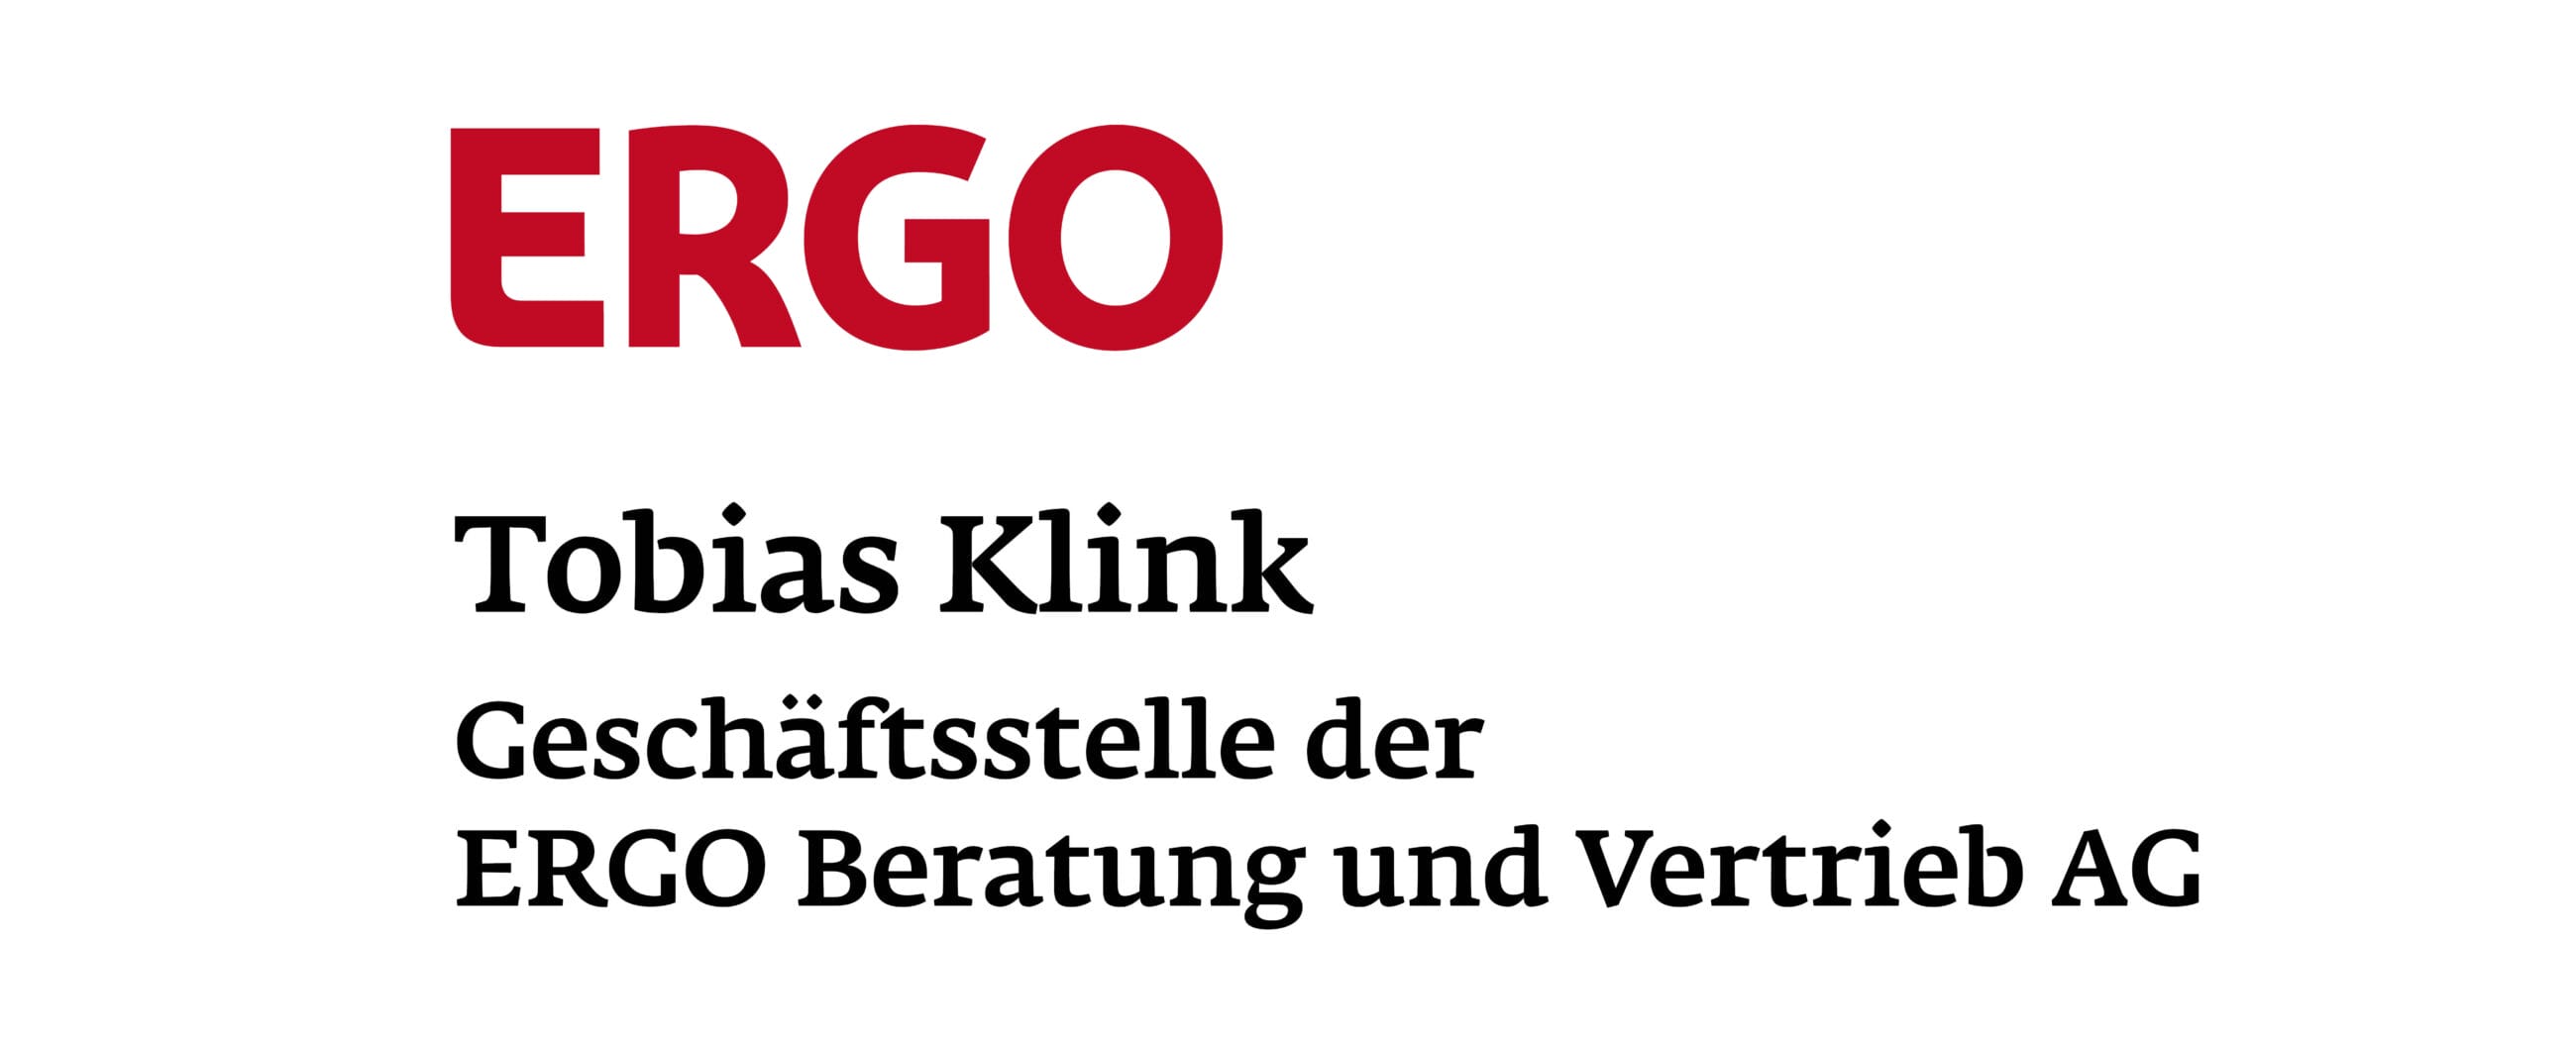 Ergo Klink